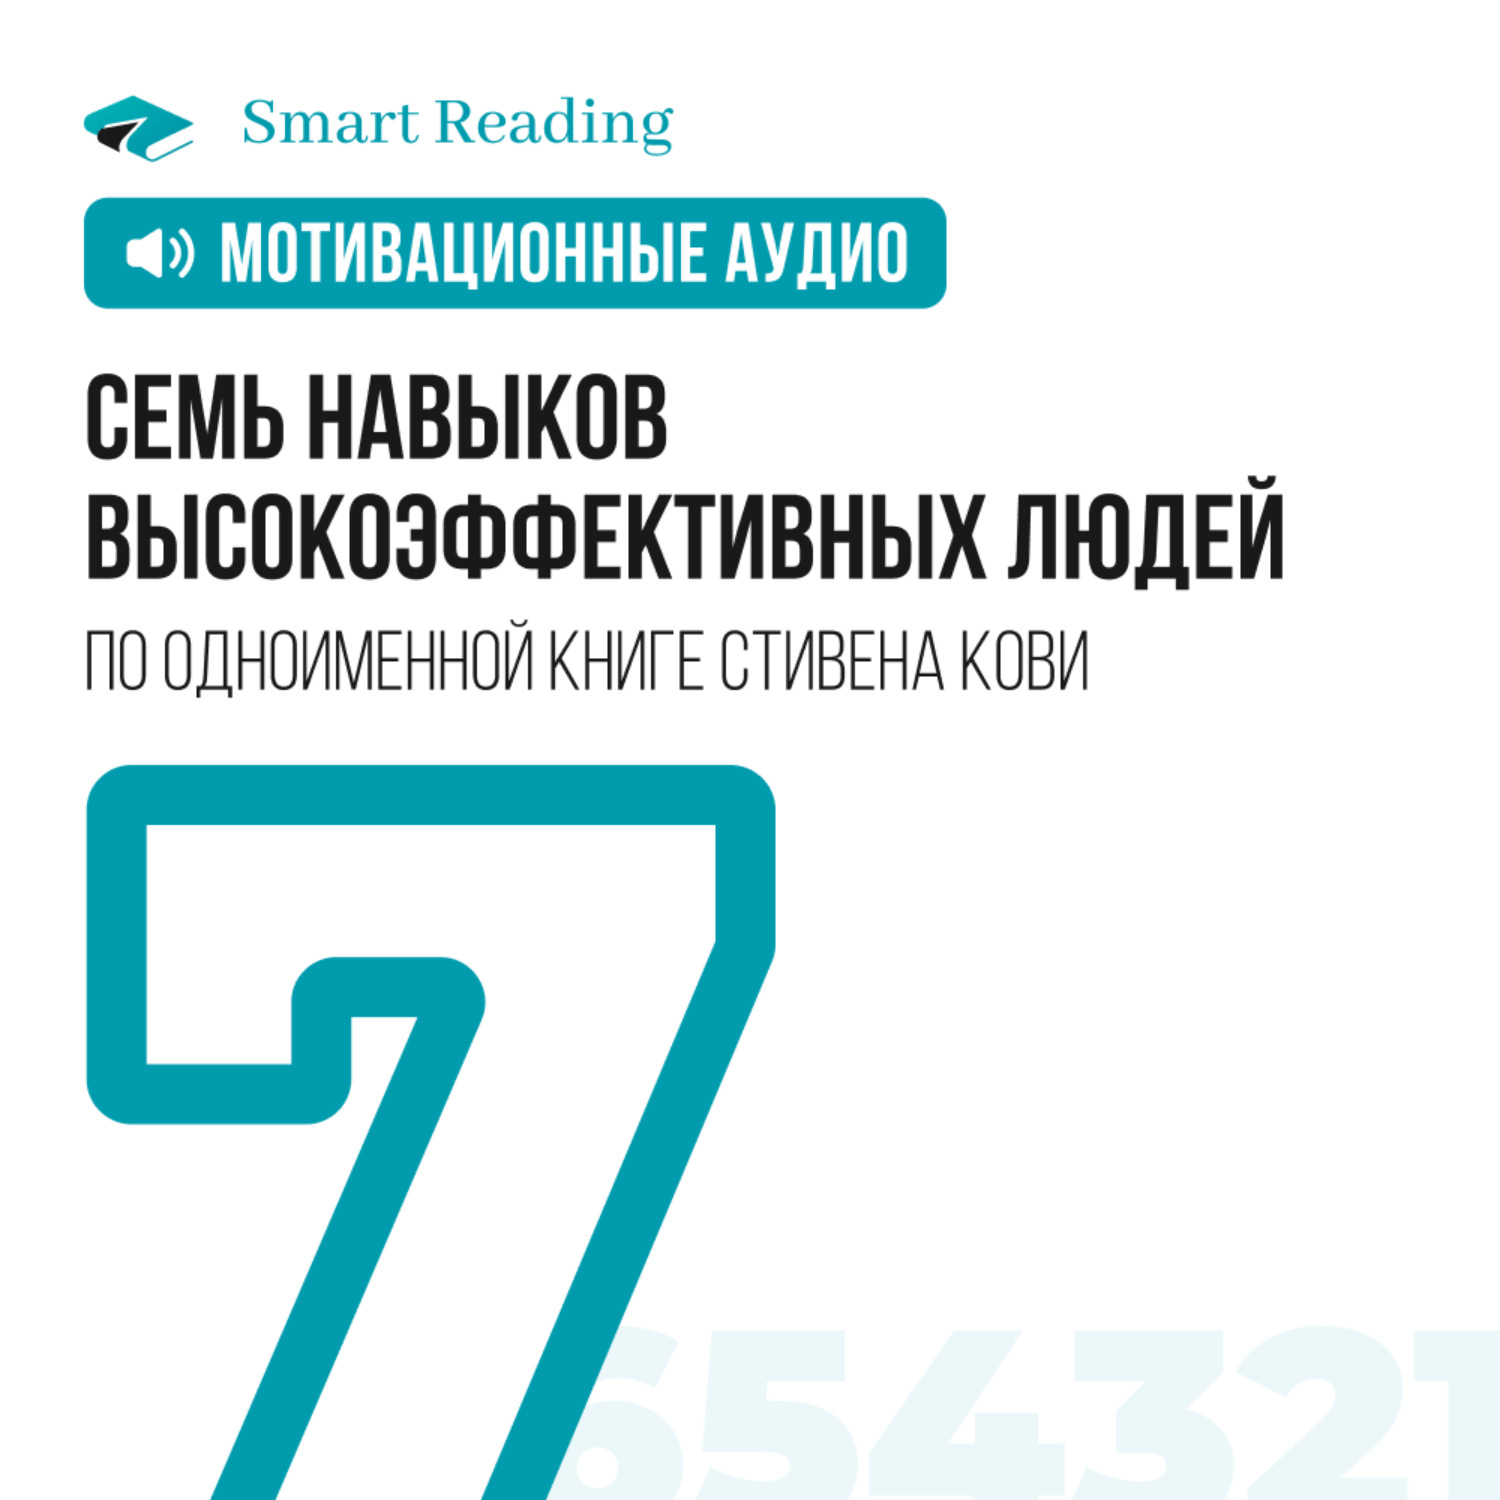 Smart reading 7 навыков высокоэффективных людей